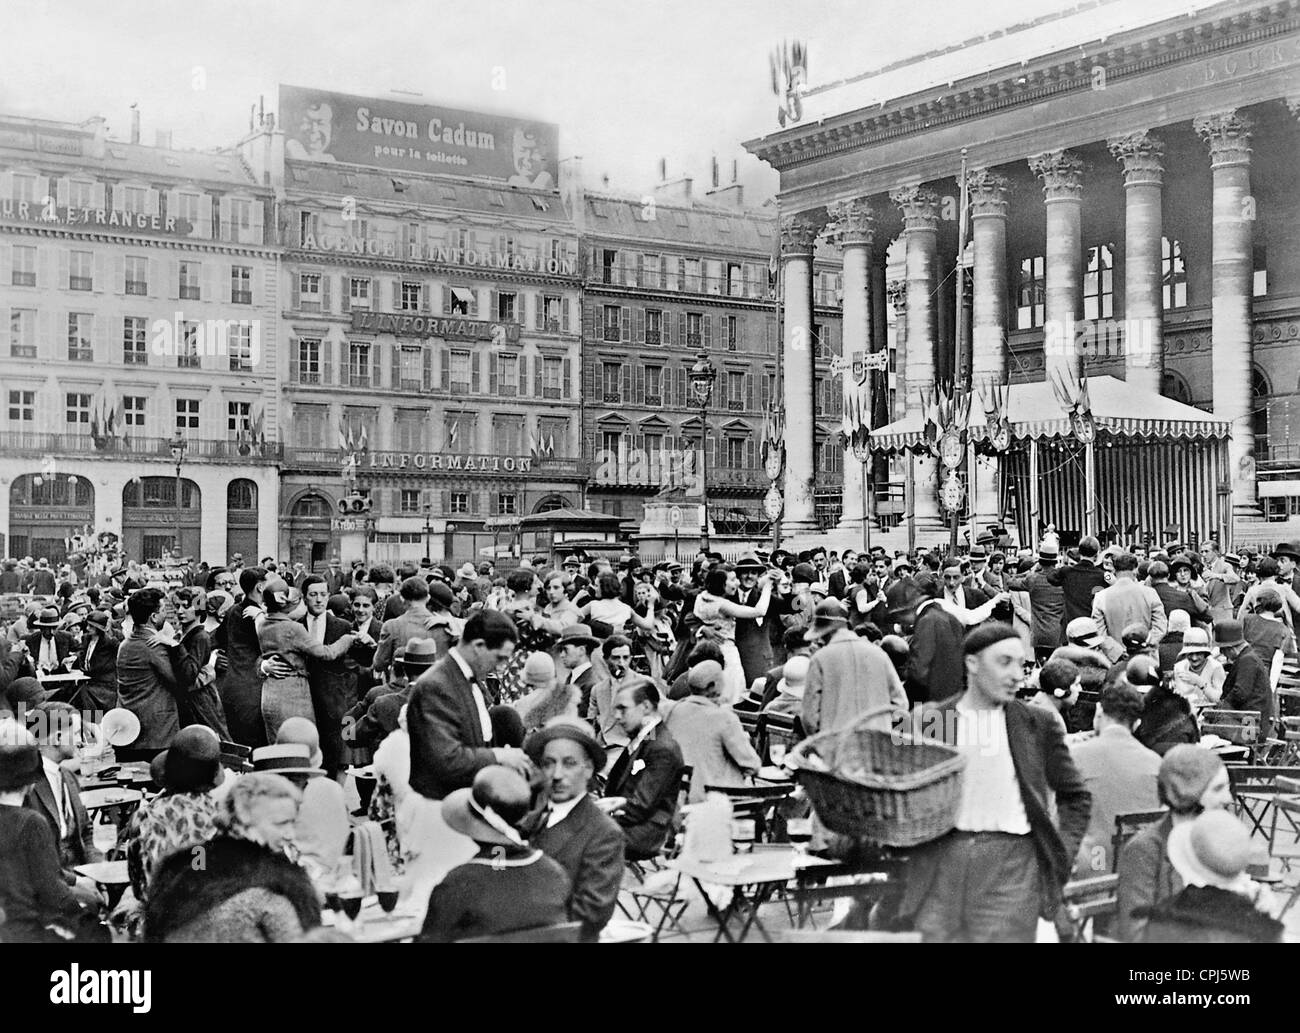 Place de la bourse paris hi-res stock photography and images - Alamy